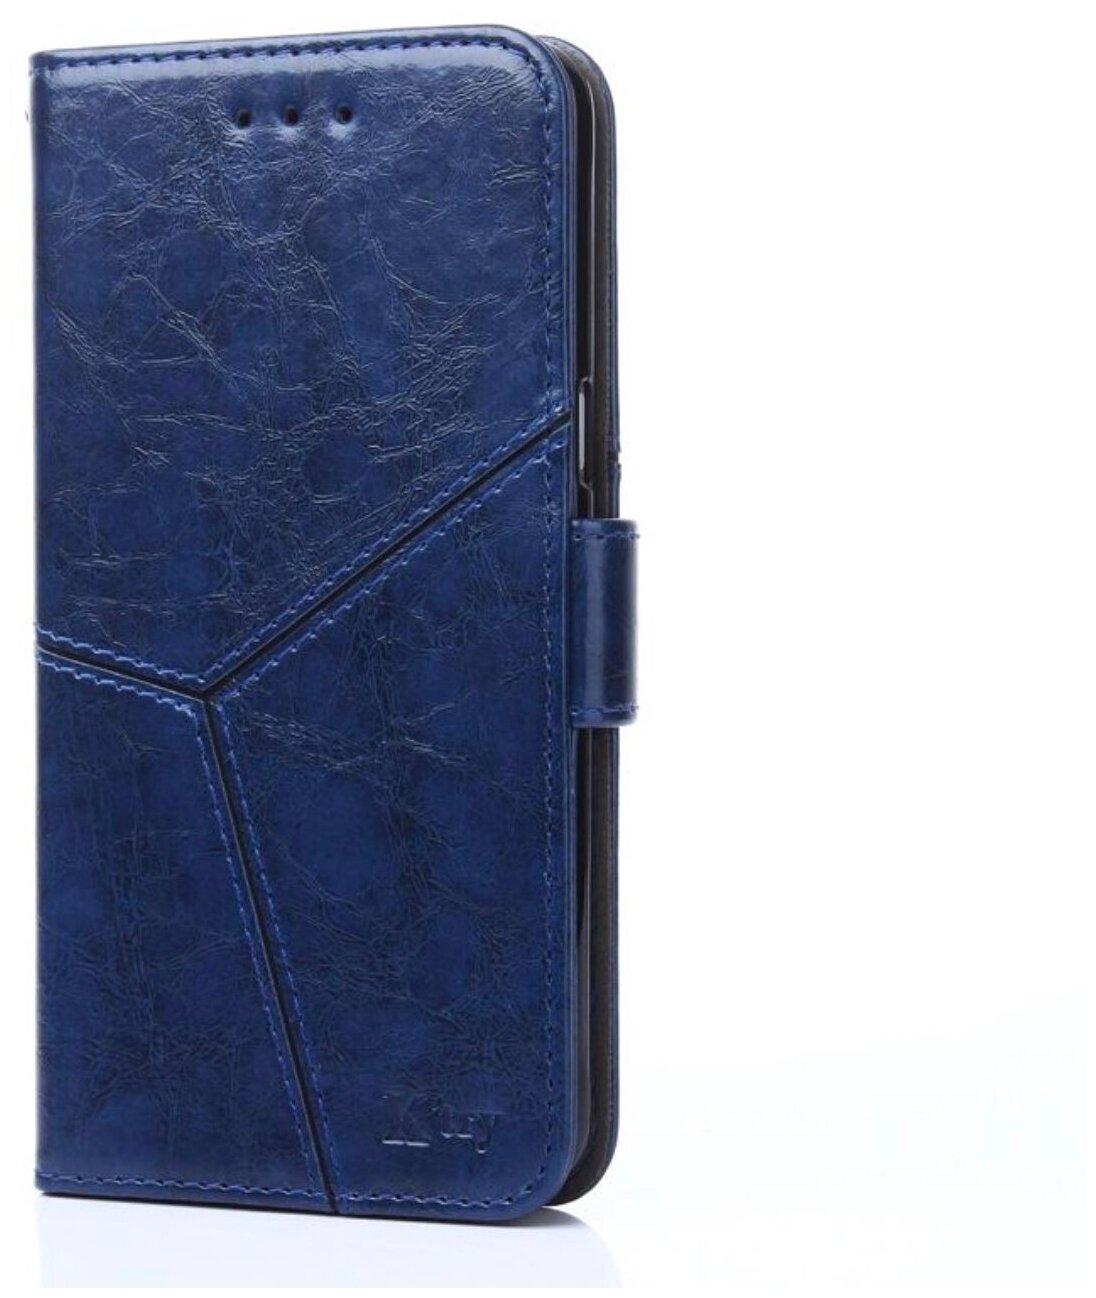 Чехол-книжка Чехол. ру для Samsung Galaxy A7 (2018) SM-A750FN/DS прошитый по контуру с необычным геометрическим швом синий